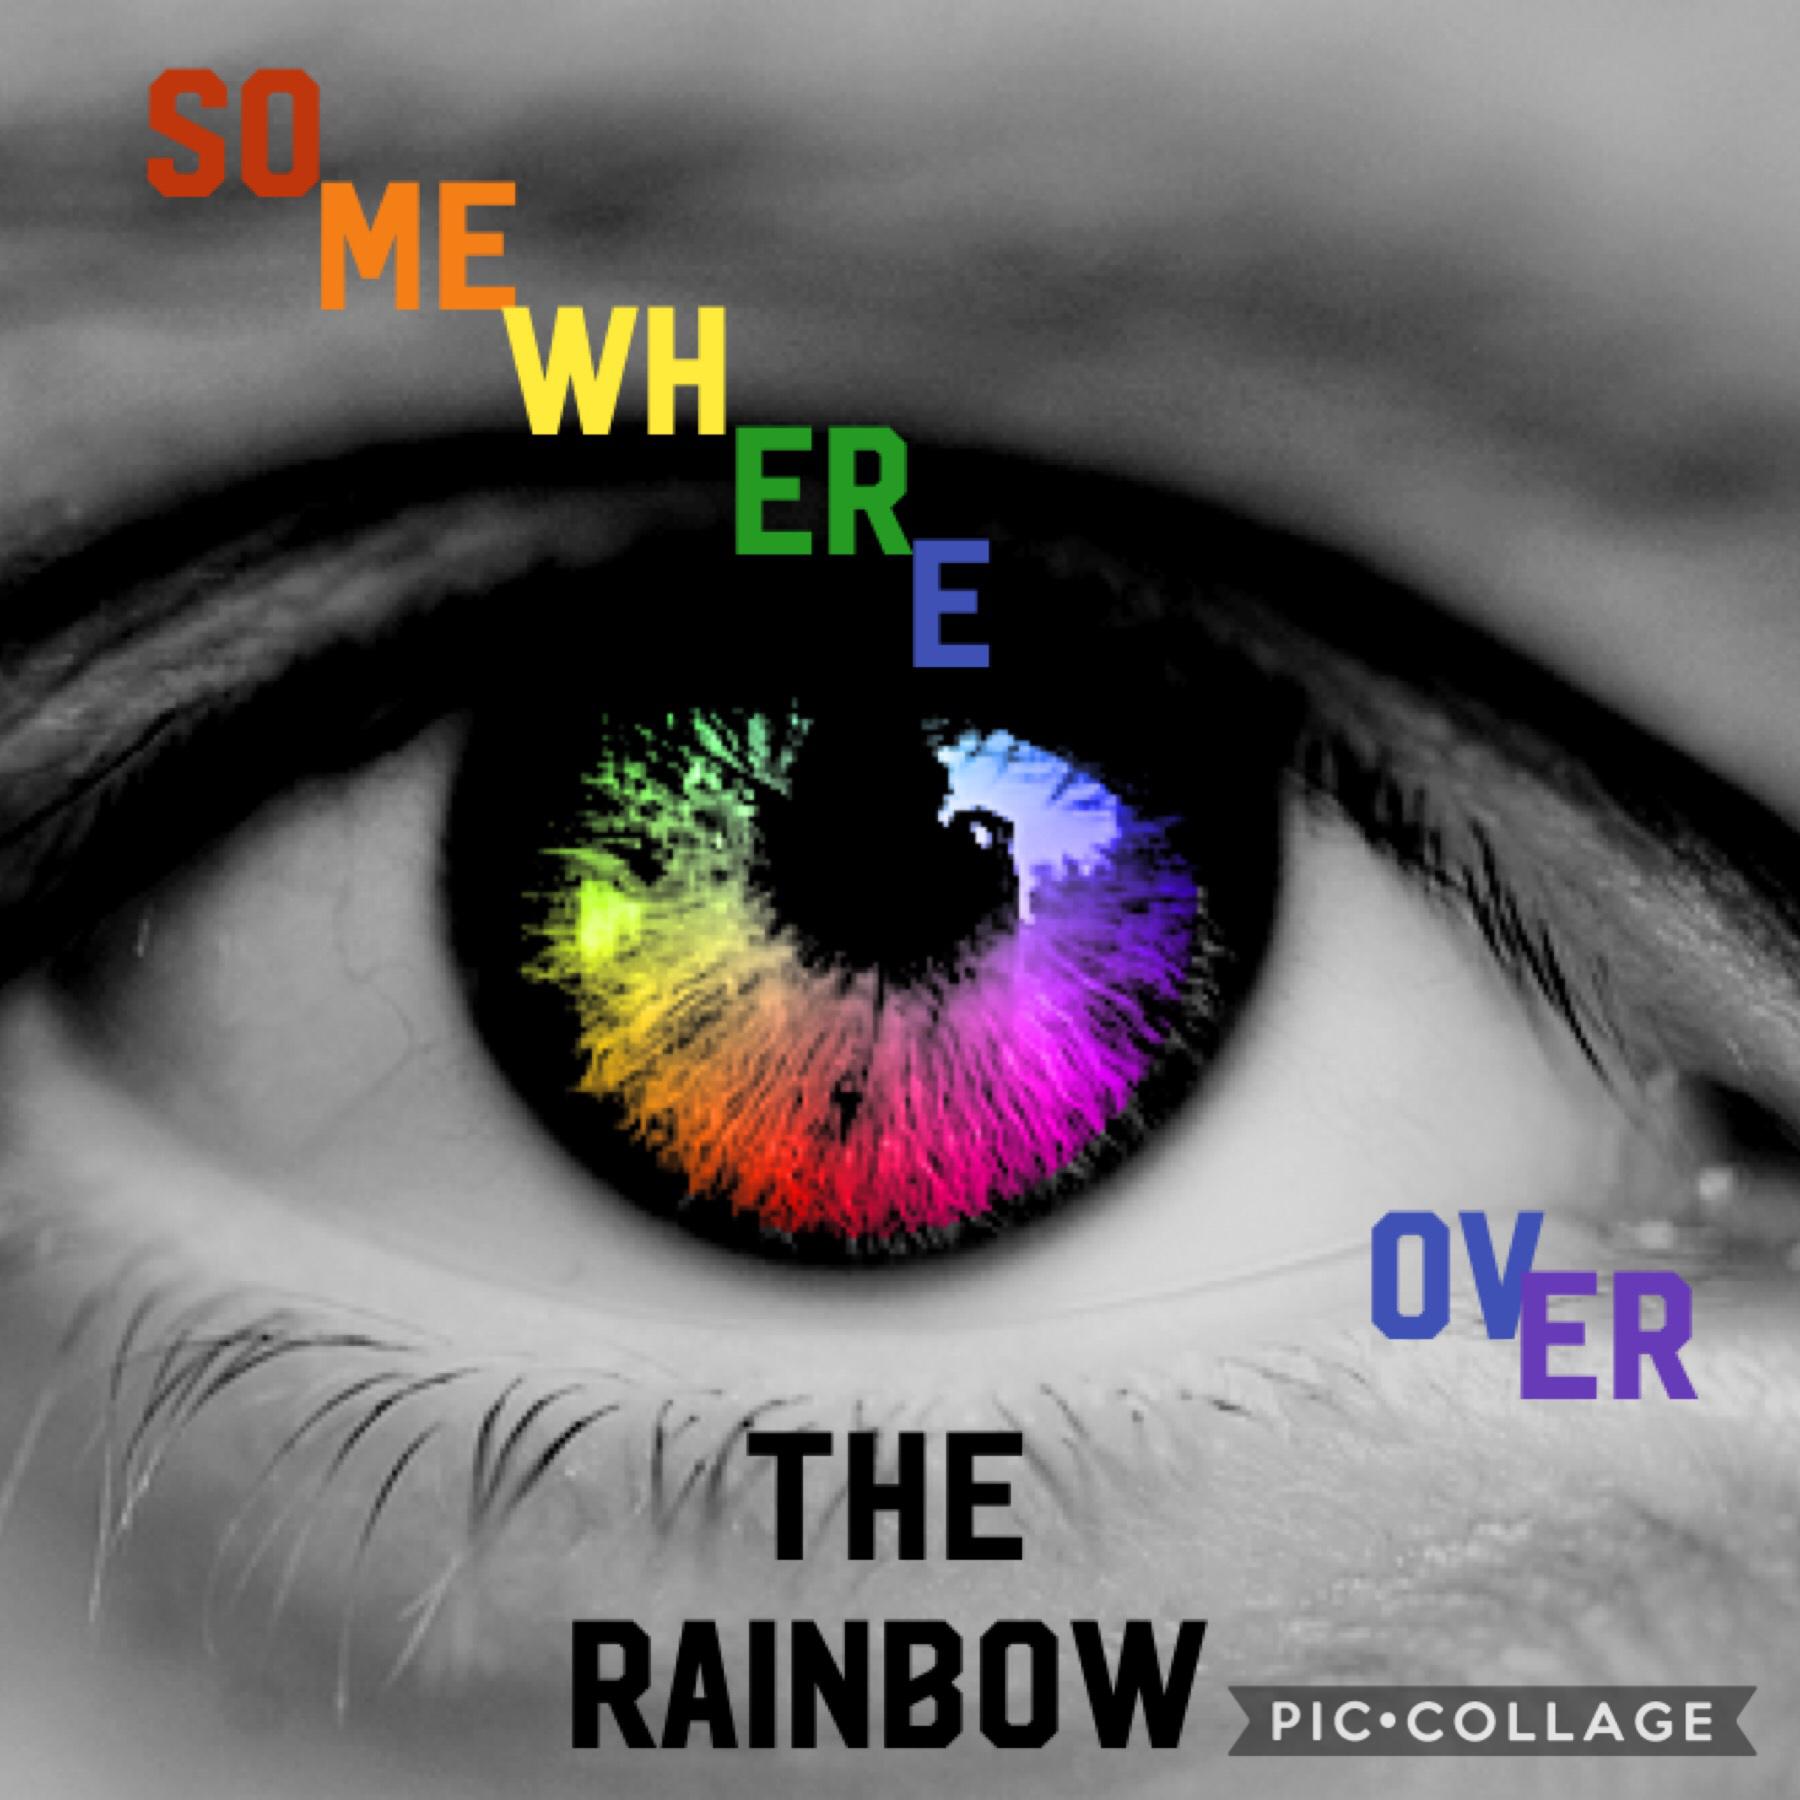 Over the rainbow
